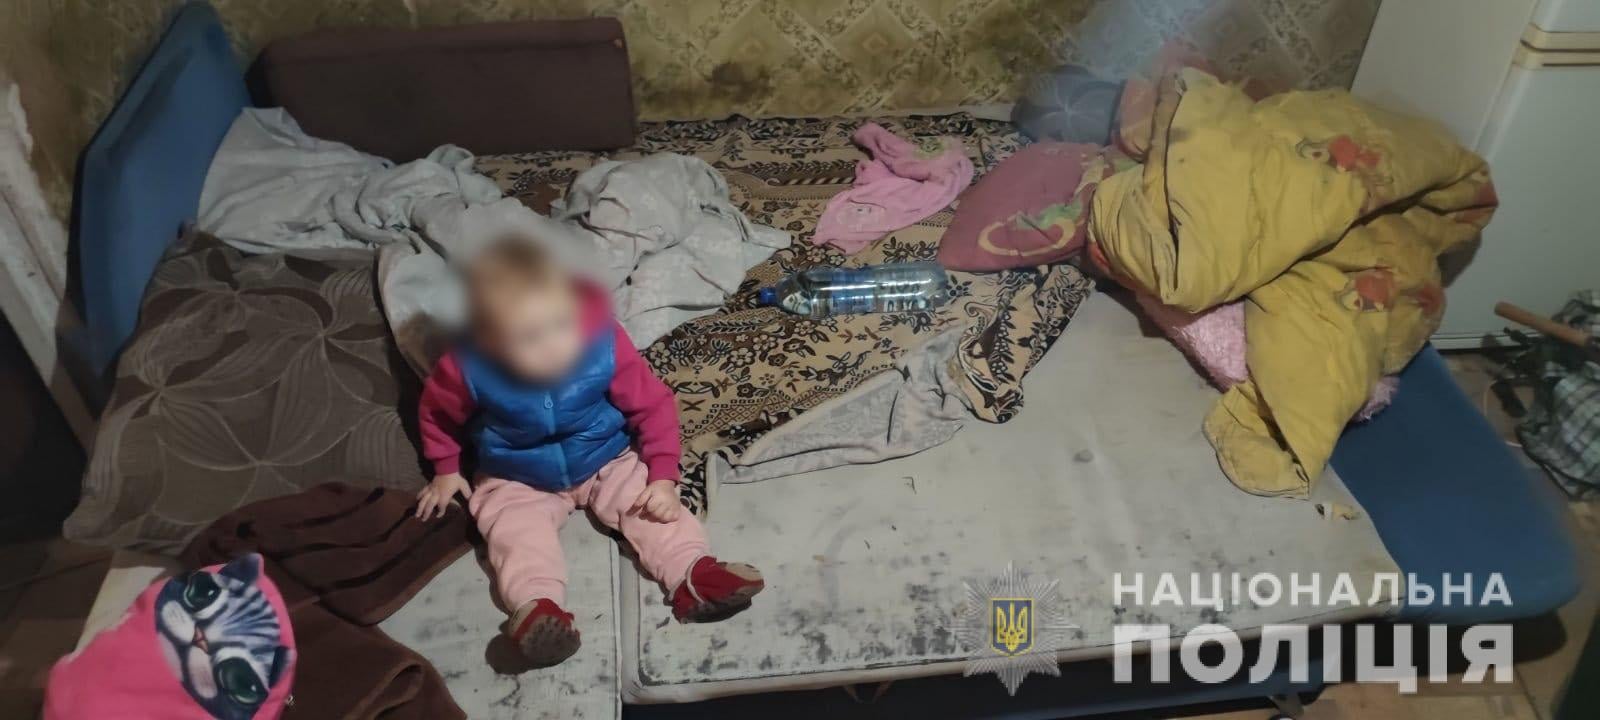 В Харькове полицейские увидели на видеозаписи, как пьяная мать уронила ребенка — женщину нашли и забрали малыша (фото)